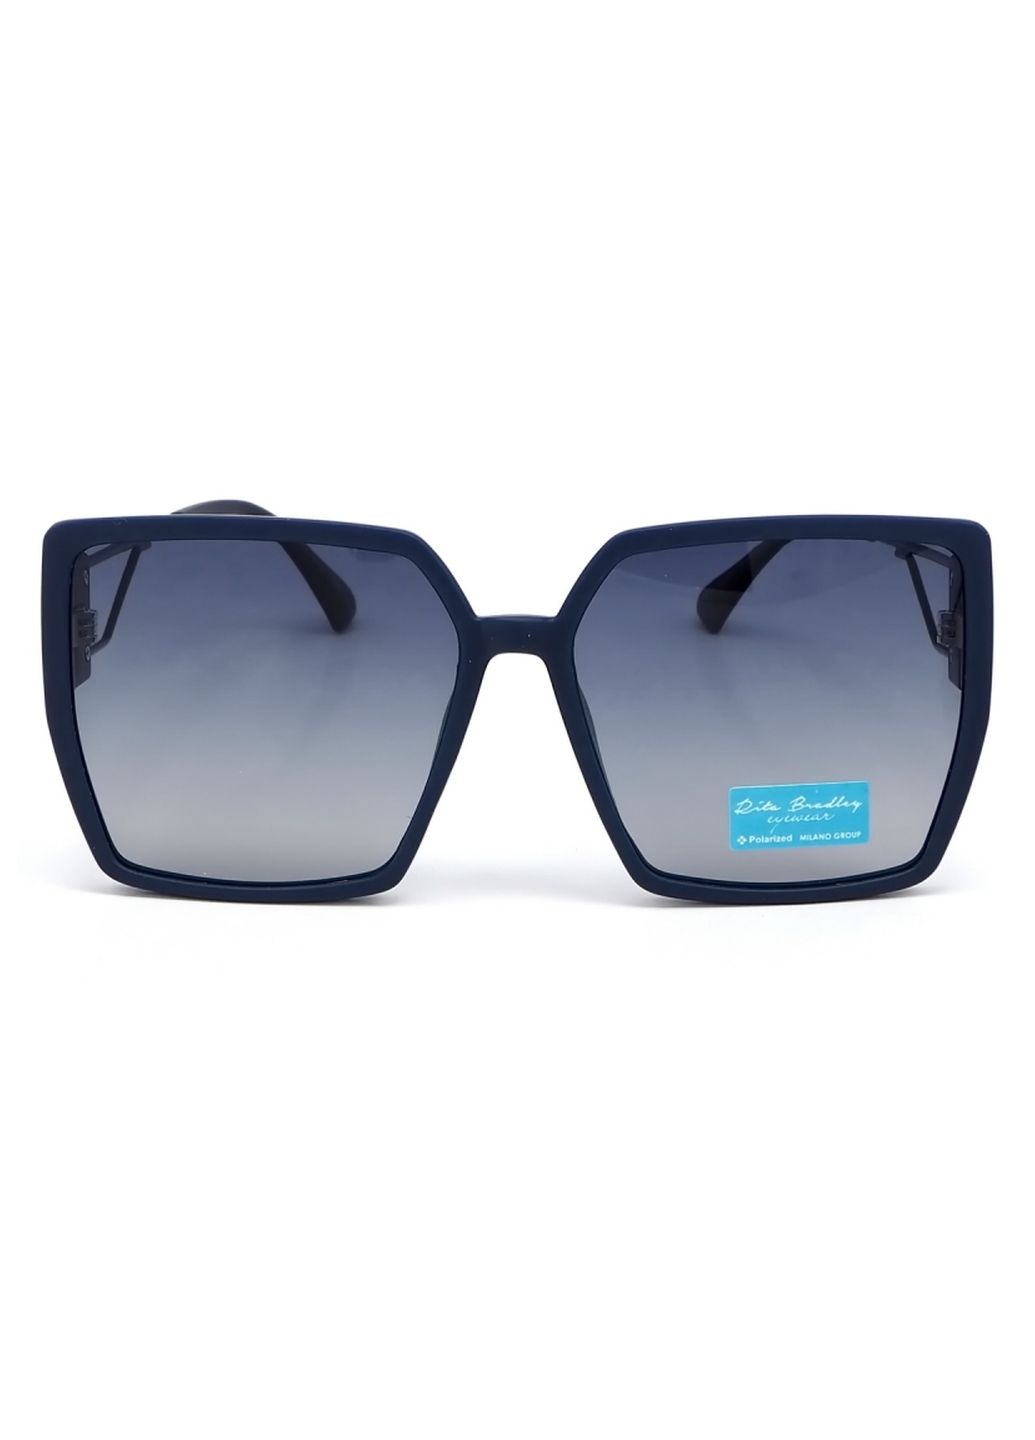 Купить Женские солнцезащитные очки Rita Bradley с поляризацией RB732 112086 в интернет-магазине